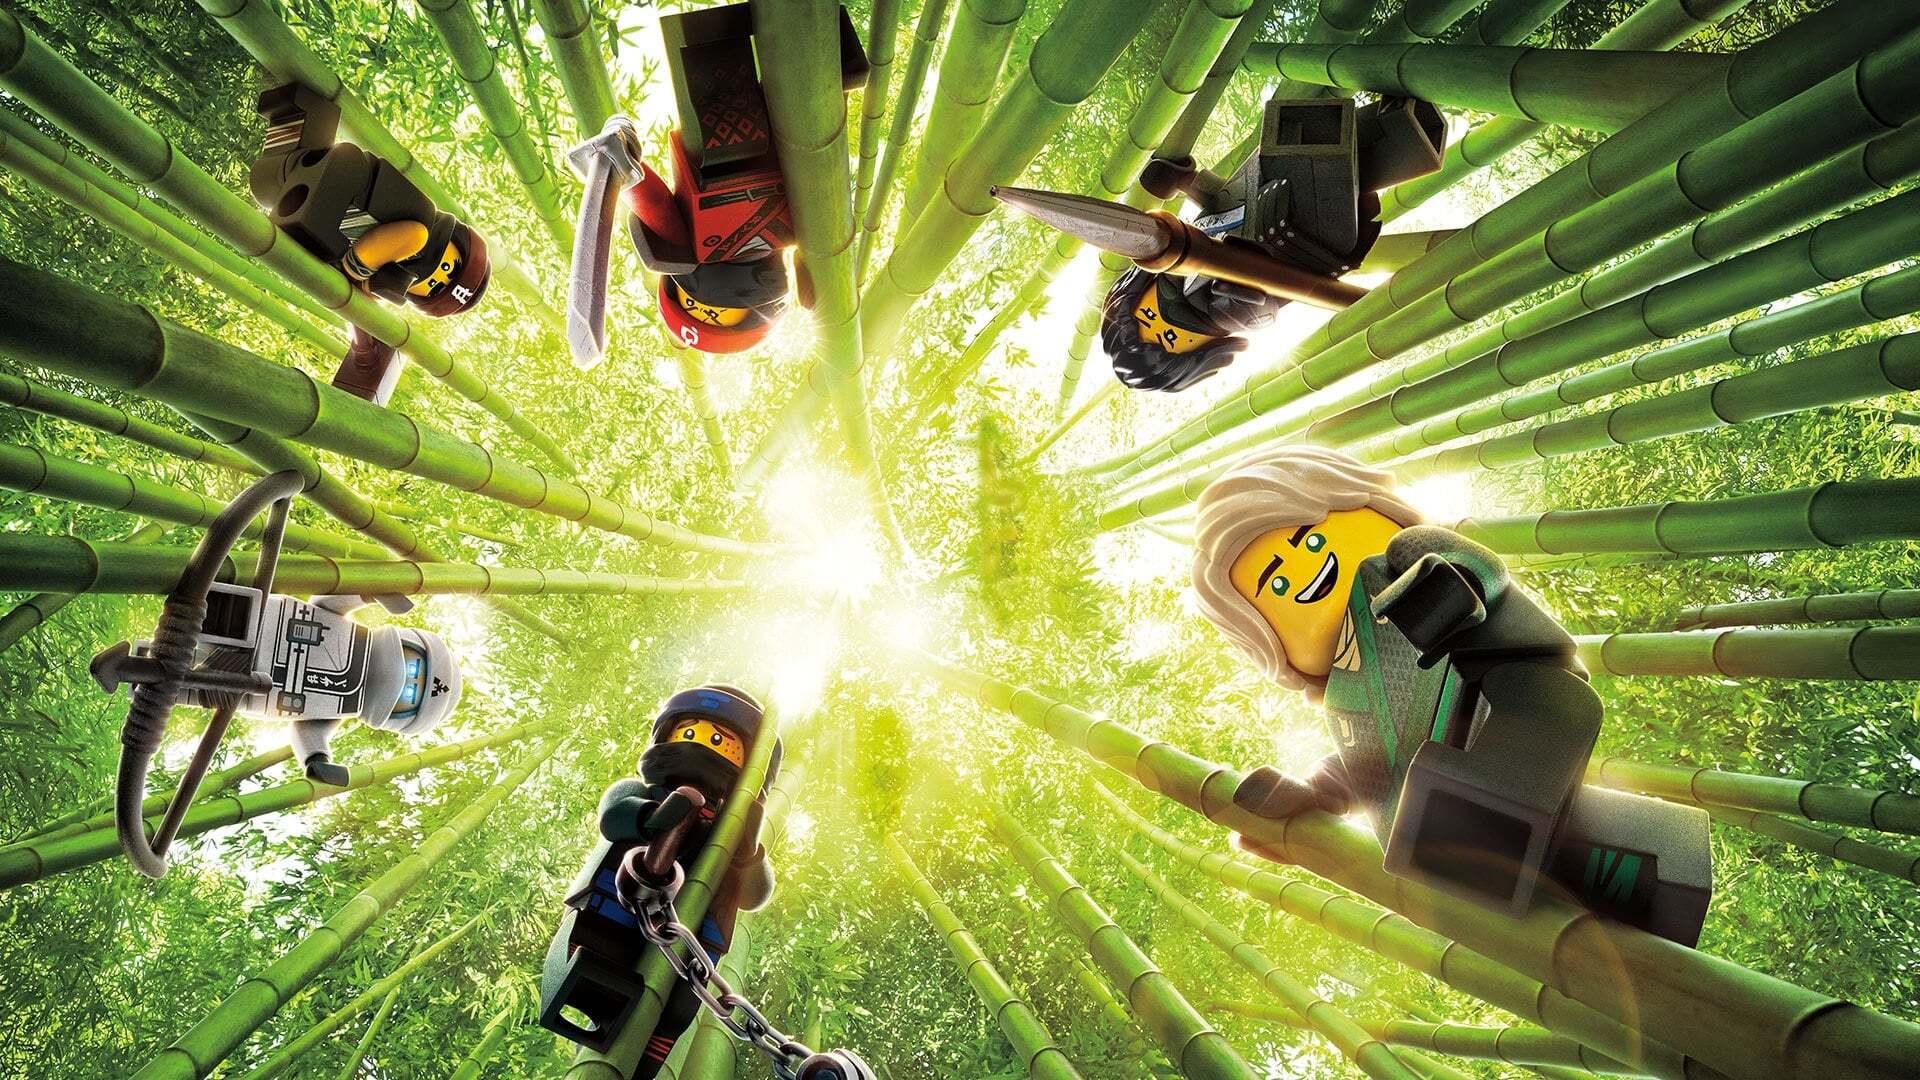 ლეგო ნინძაგო / The Lego Ninjago Movie